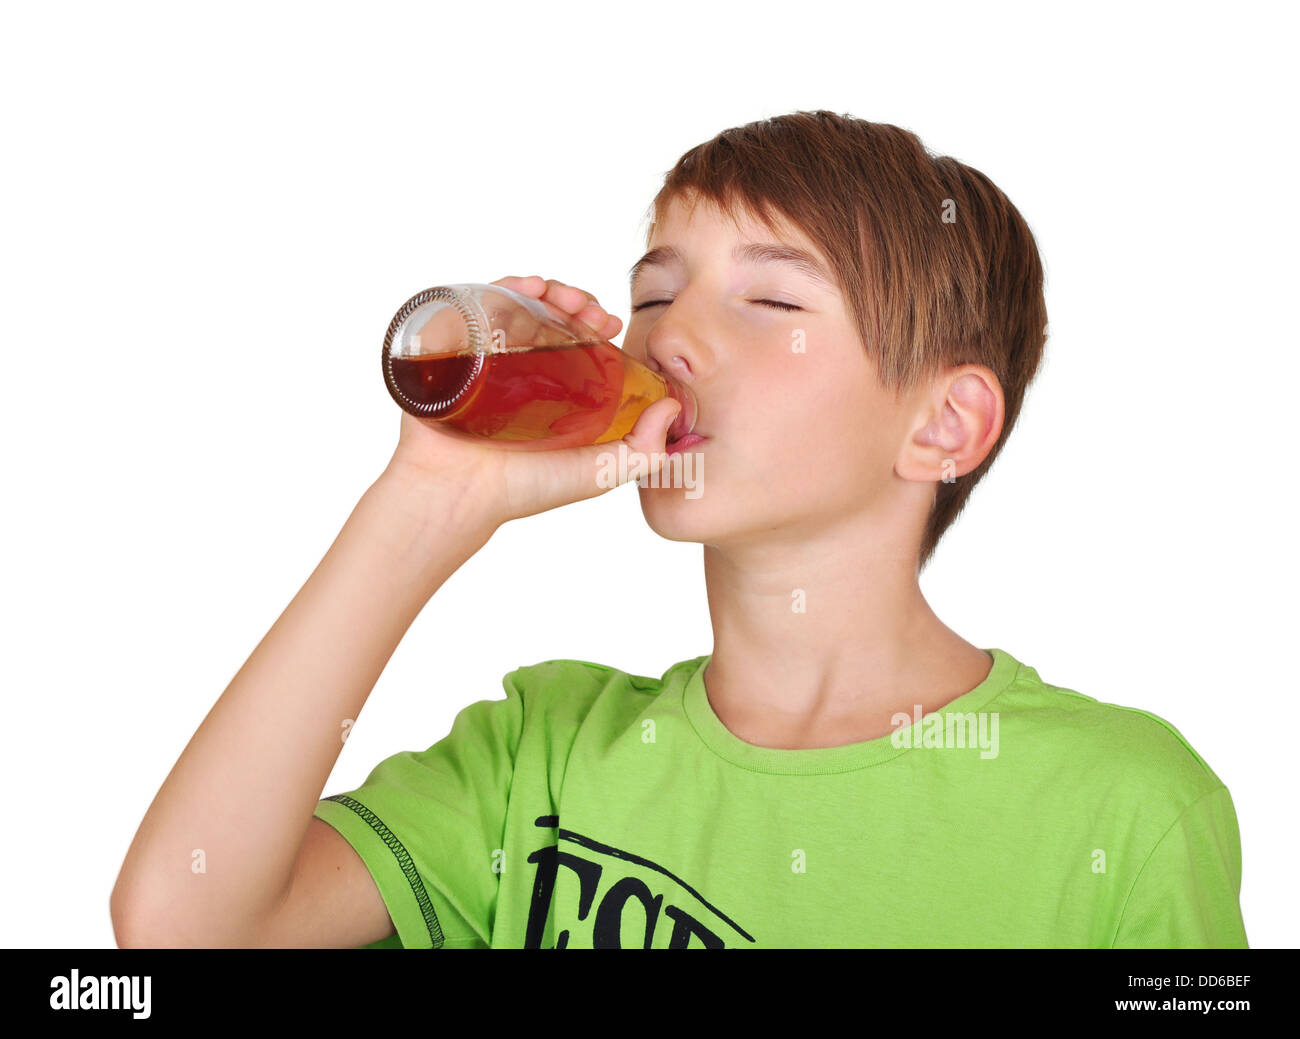 Smiling boy avec bouteille de jus à la main Banque D'Images